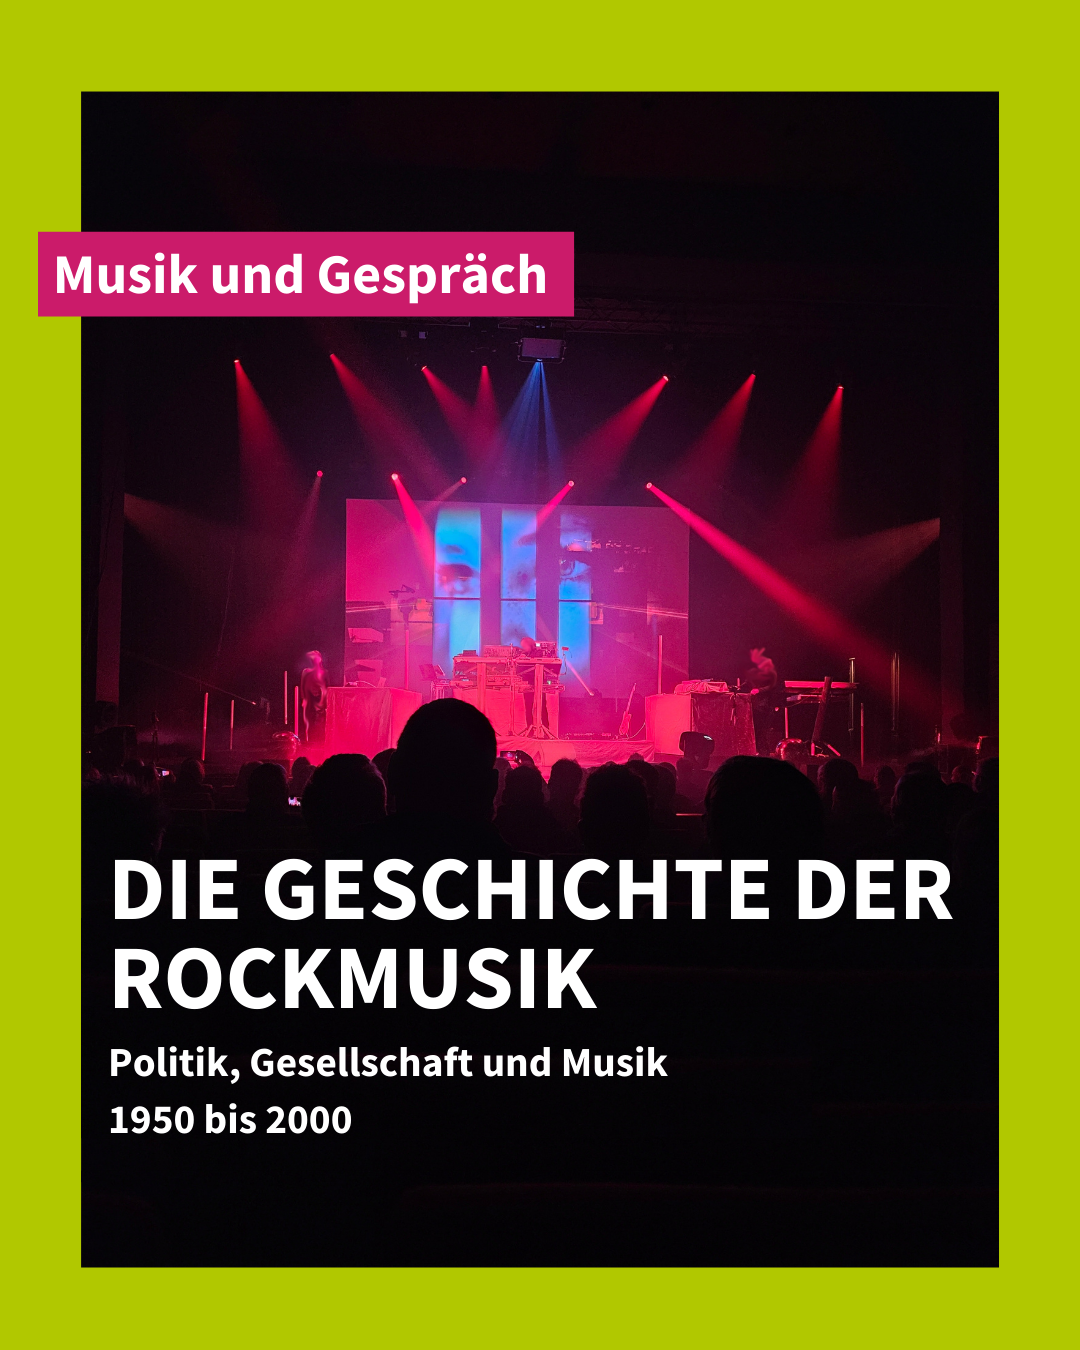 Veranstaltungsreihe: Die Geschichte der Rockmusik – Politik, Gesellschaft und Musik 1950 bis 2000